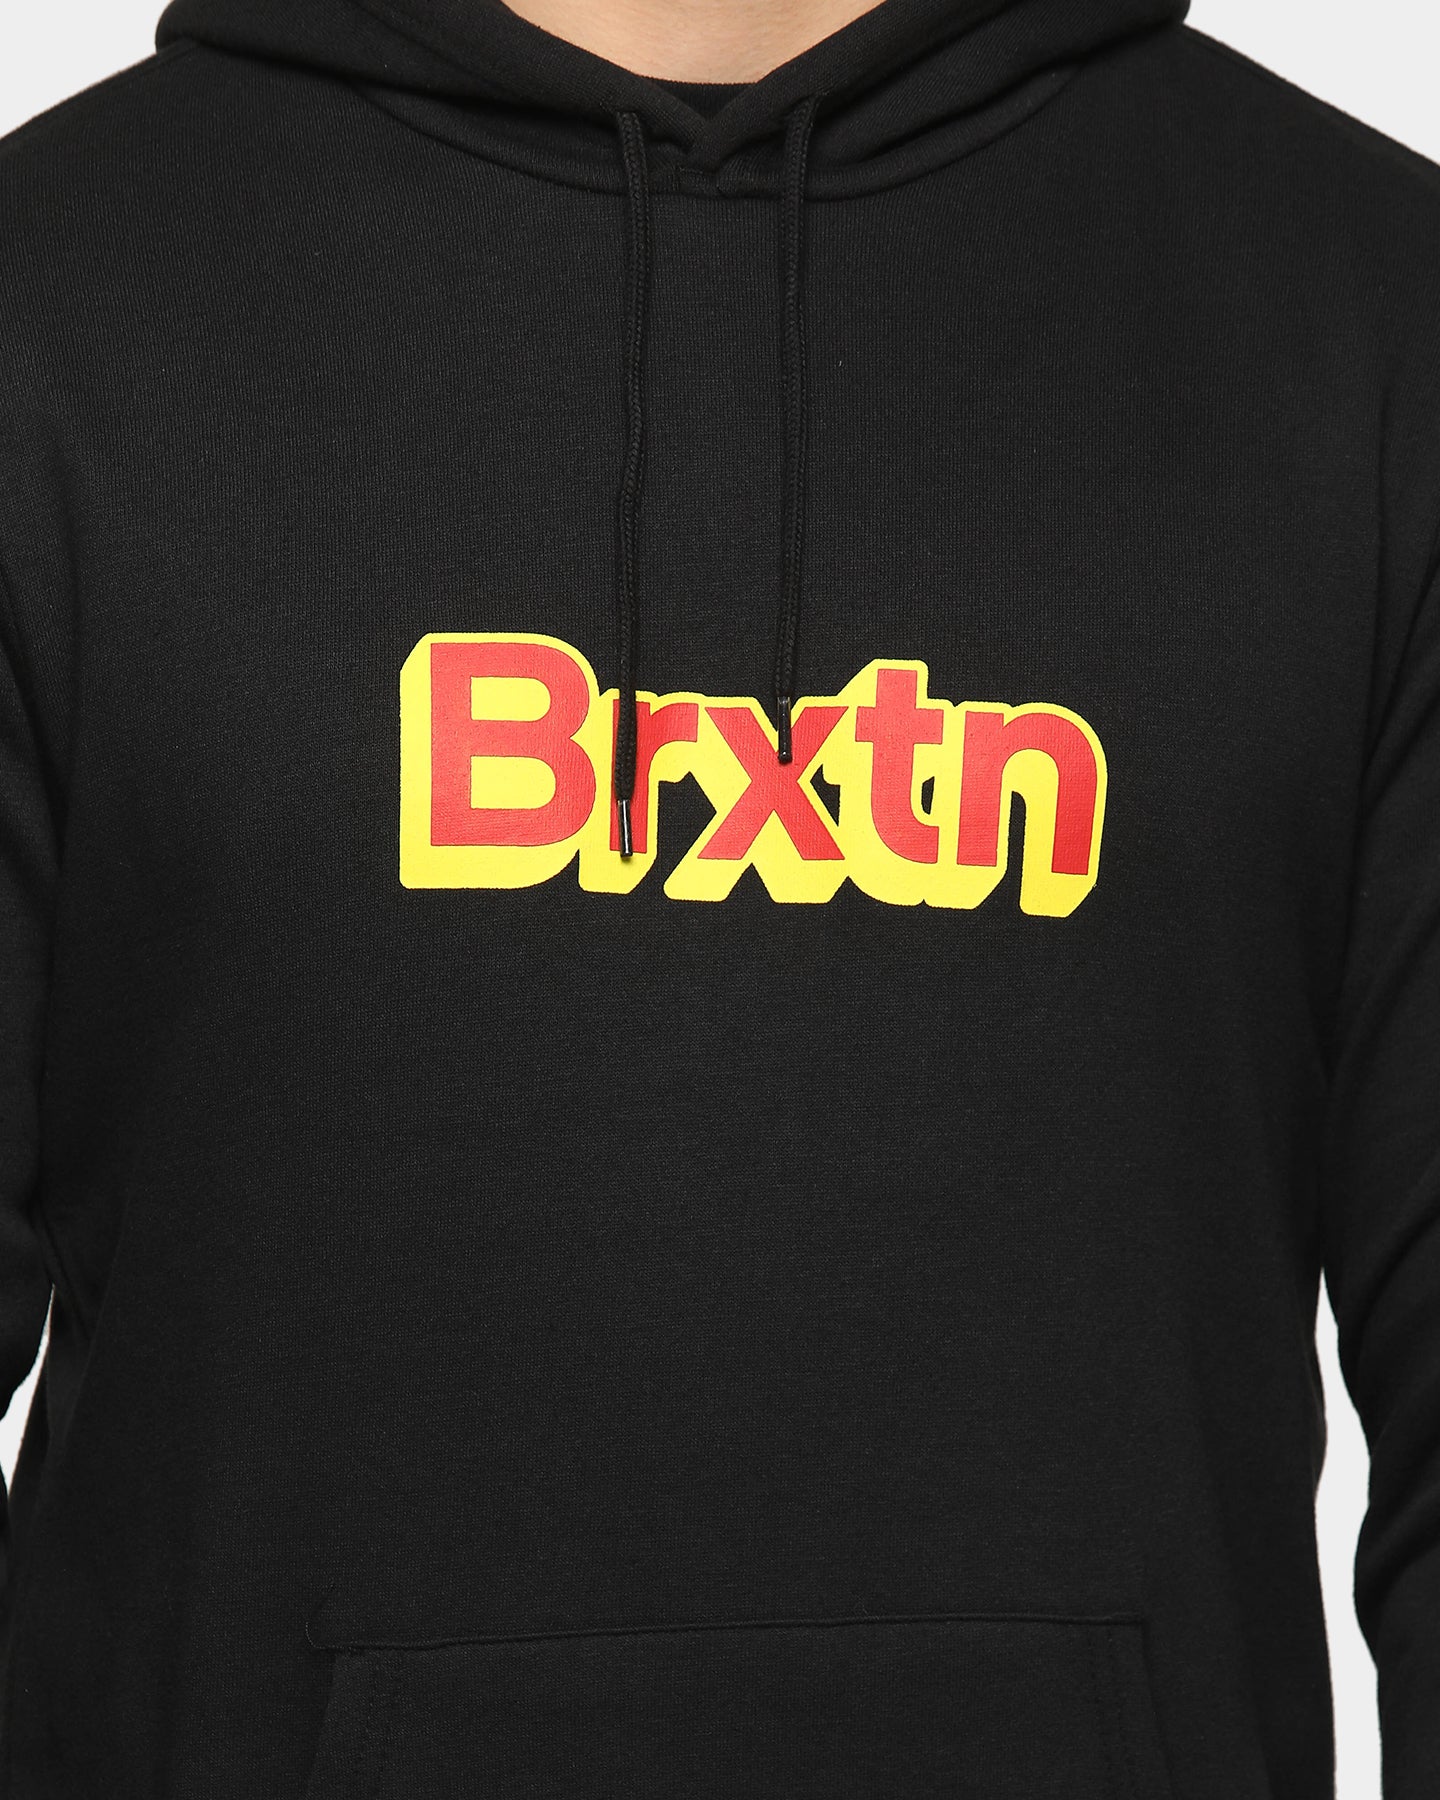 brixton hoodie black